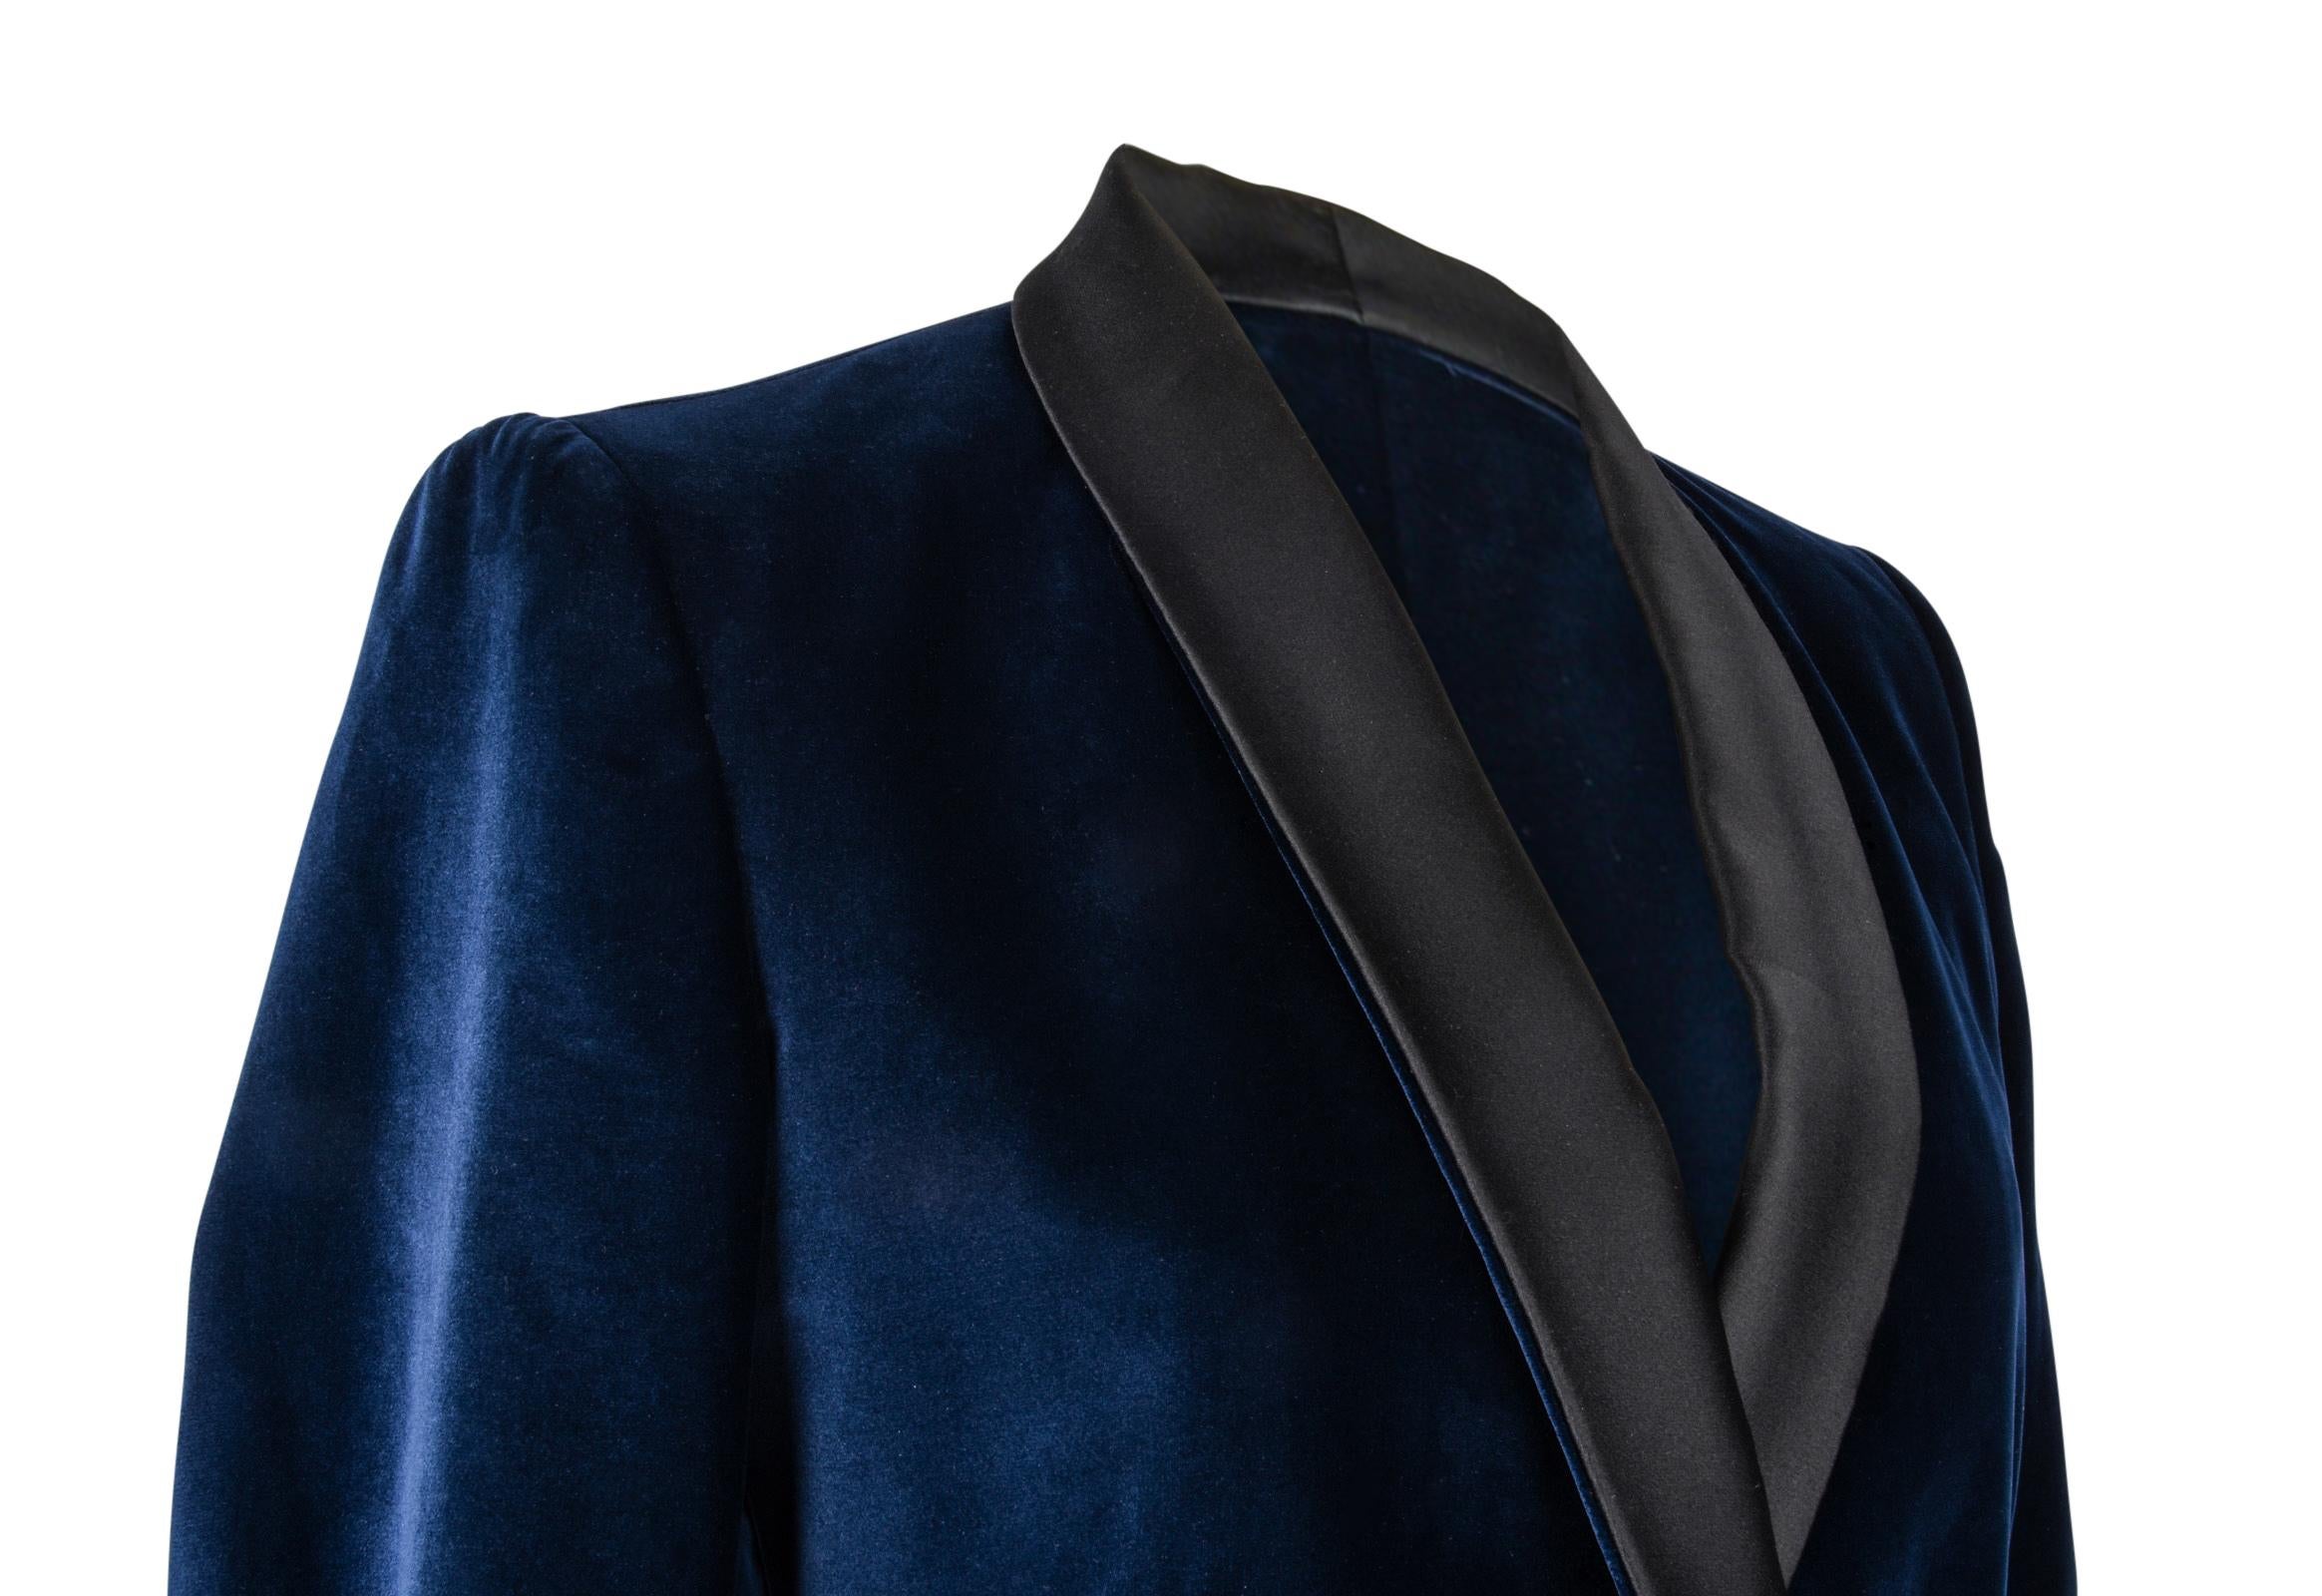 Stella McCartney Jacket Tuxedo Style Navy Velvet Black Trim 38 / 6 5